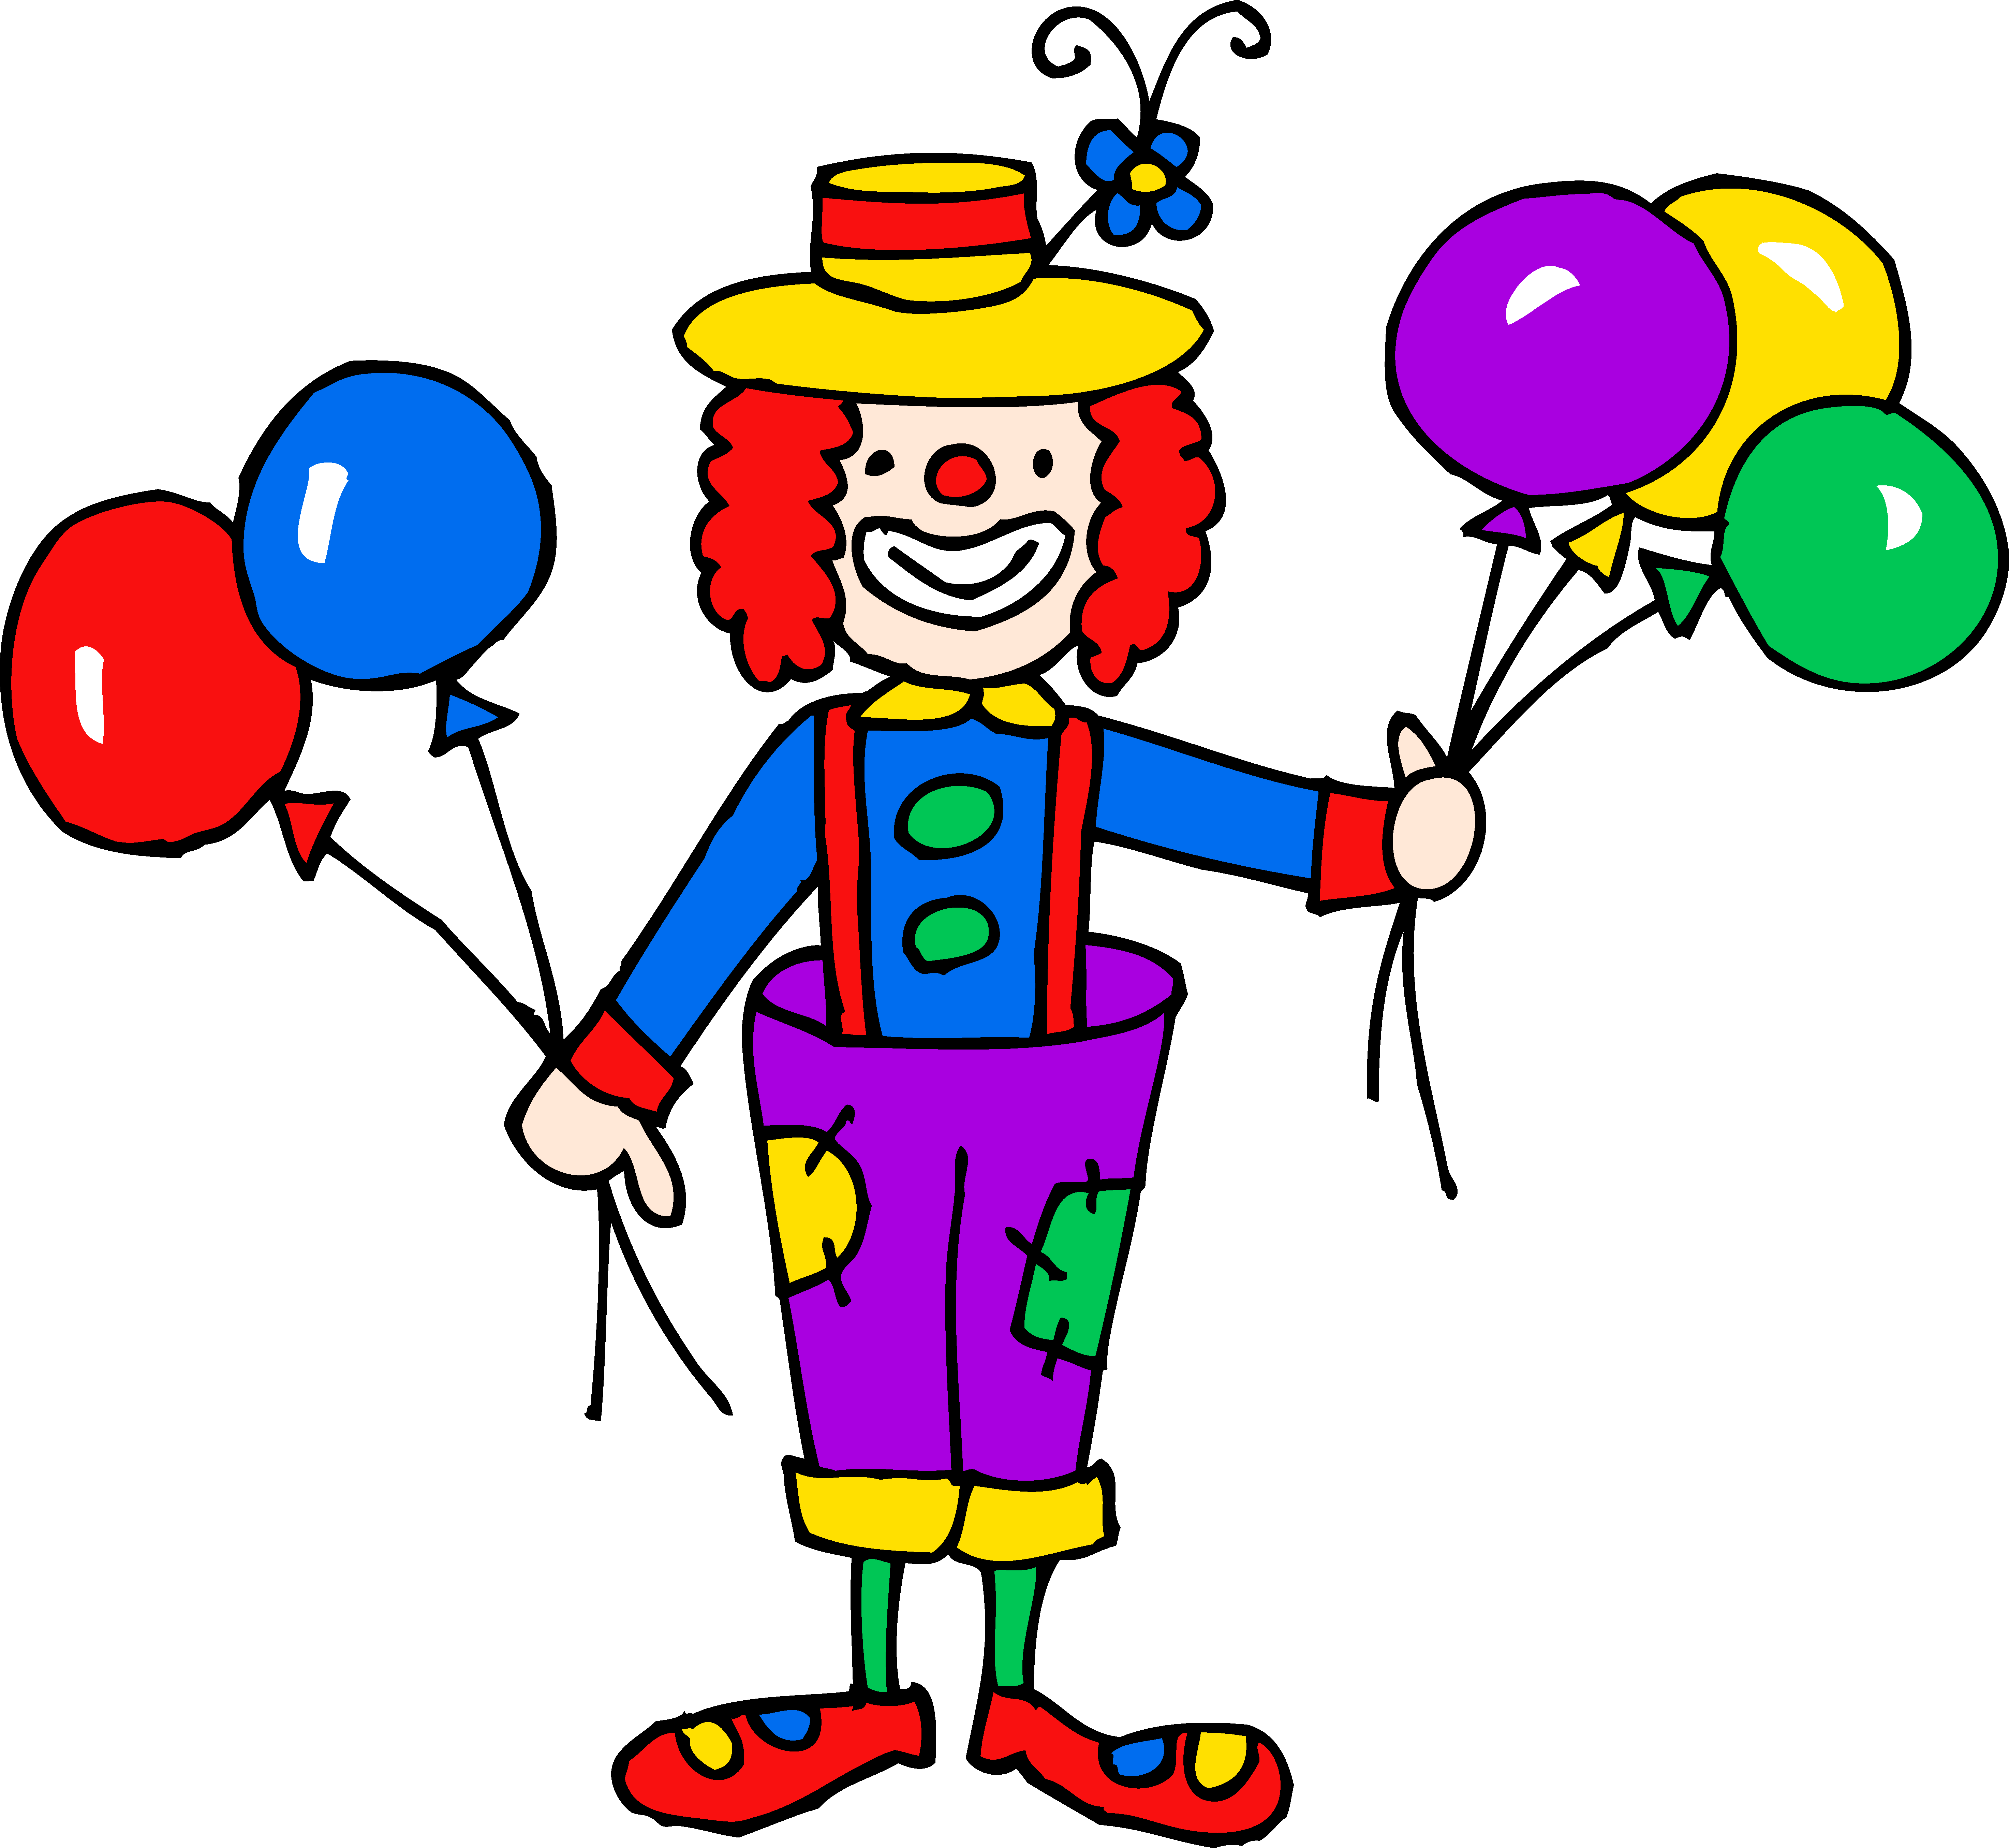 Cute colorful clown.